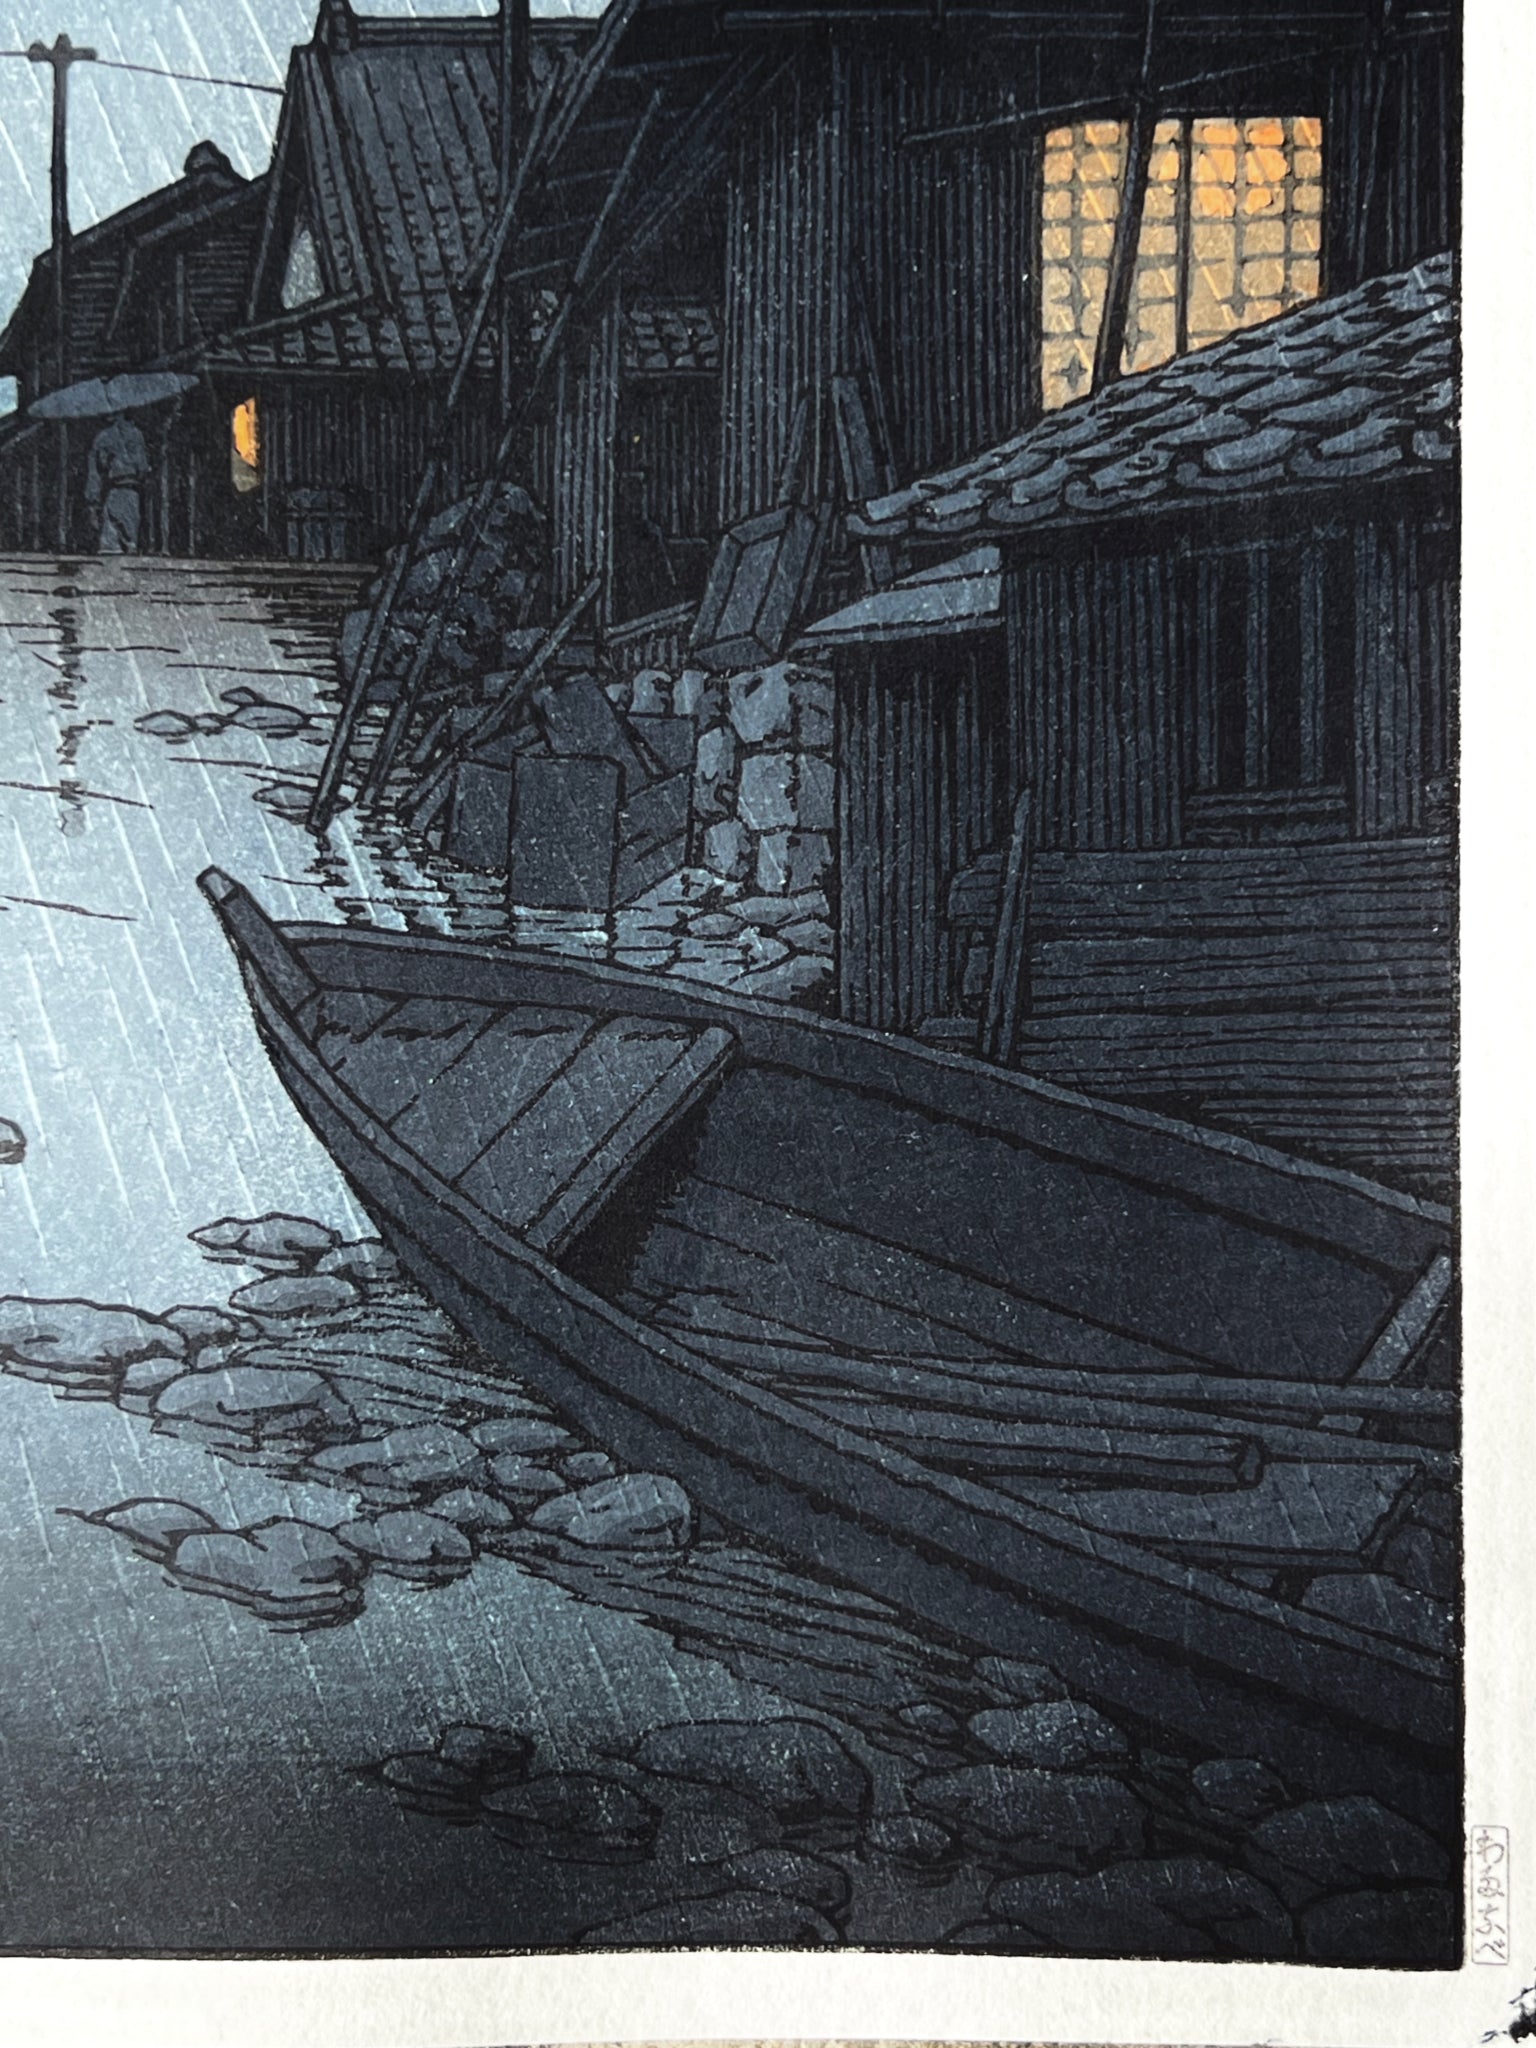 nuit, la pluie tombe sur la rue du village de Kawarako, reflet de l'eau, maisons éclairées, barque en premier plan barque